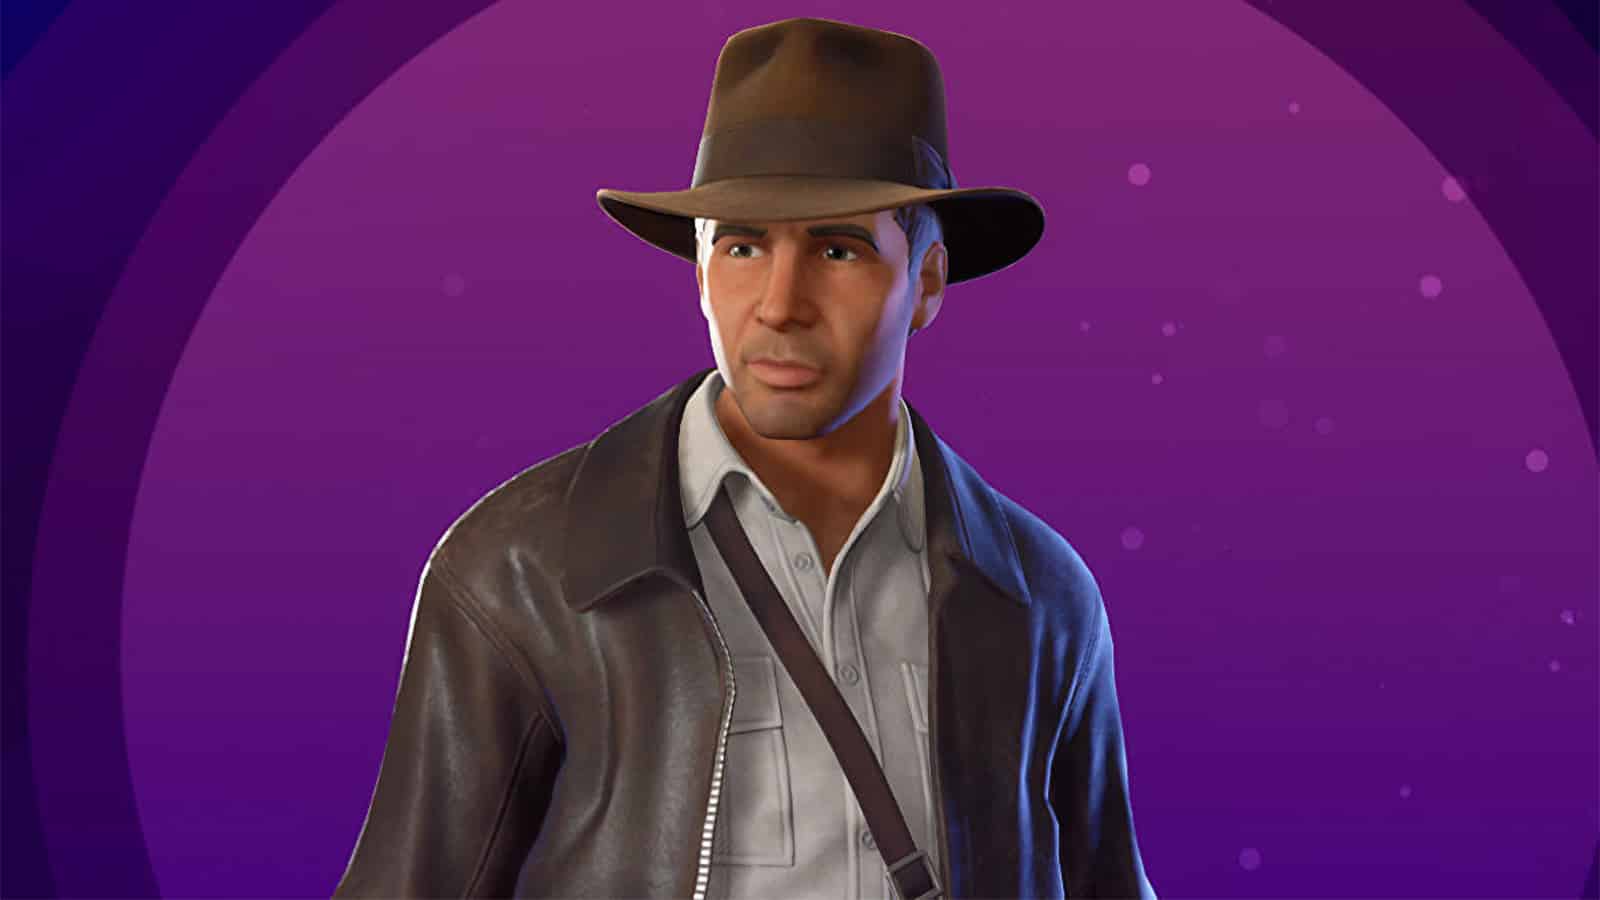 The Indiana Jones skin in Fortnite